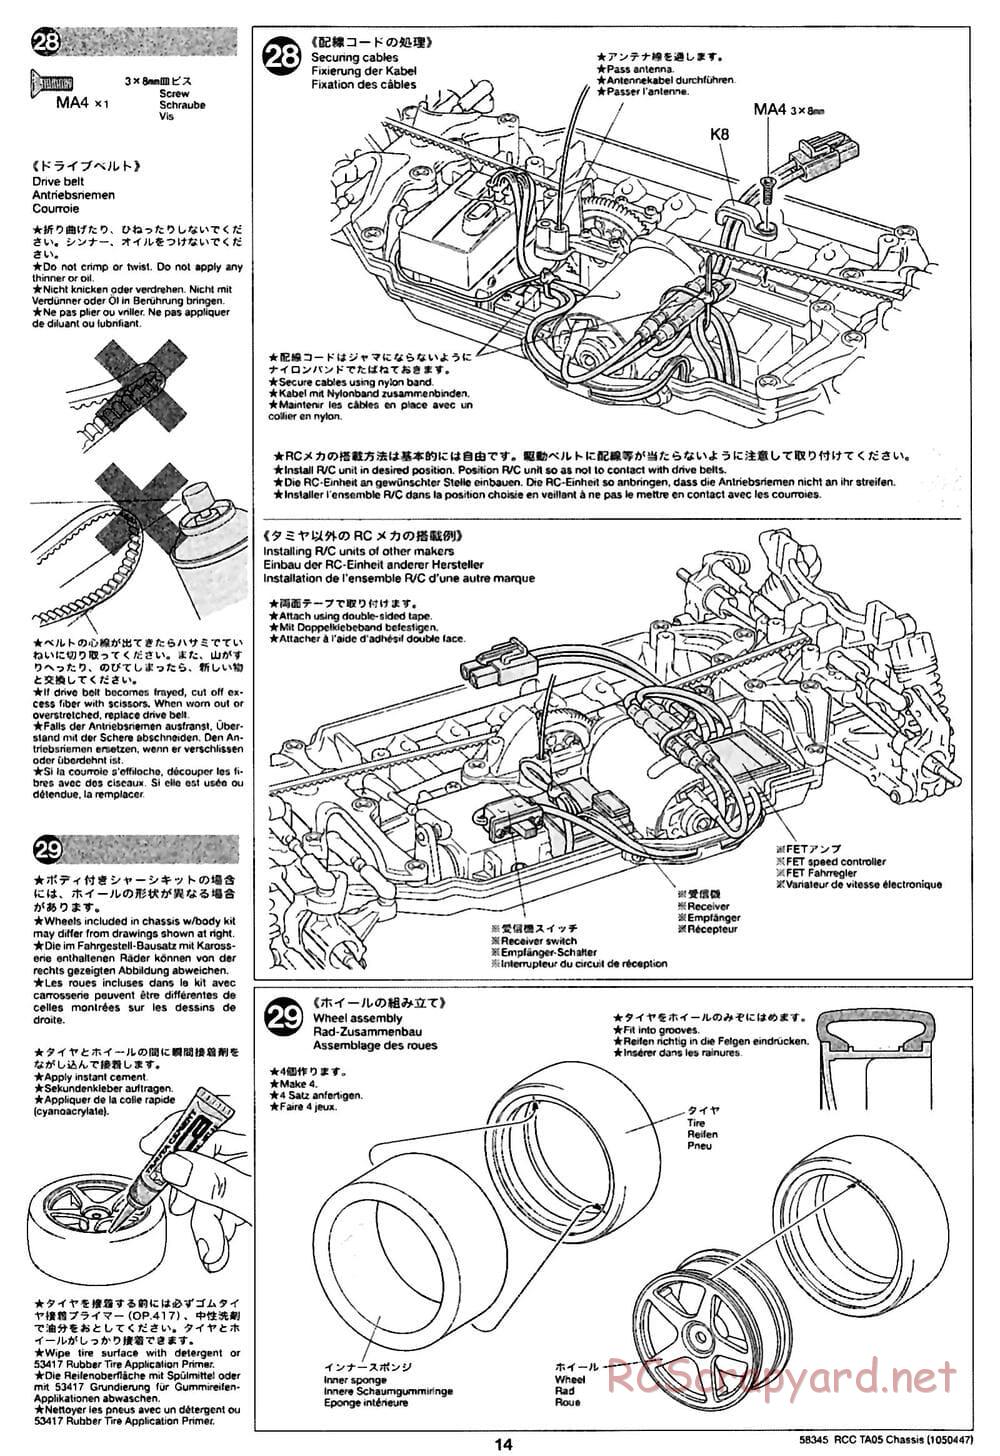 Tamiya - TA05 Chassis - Manual - Page 14